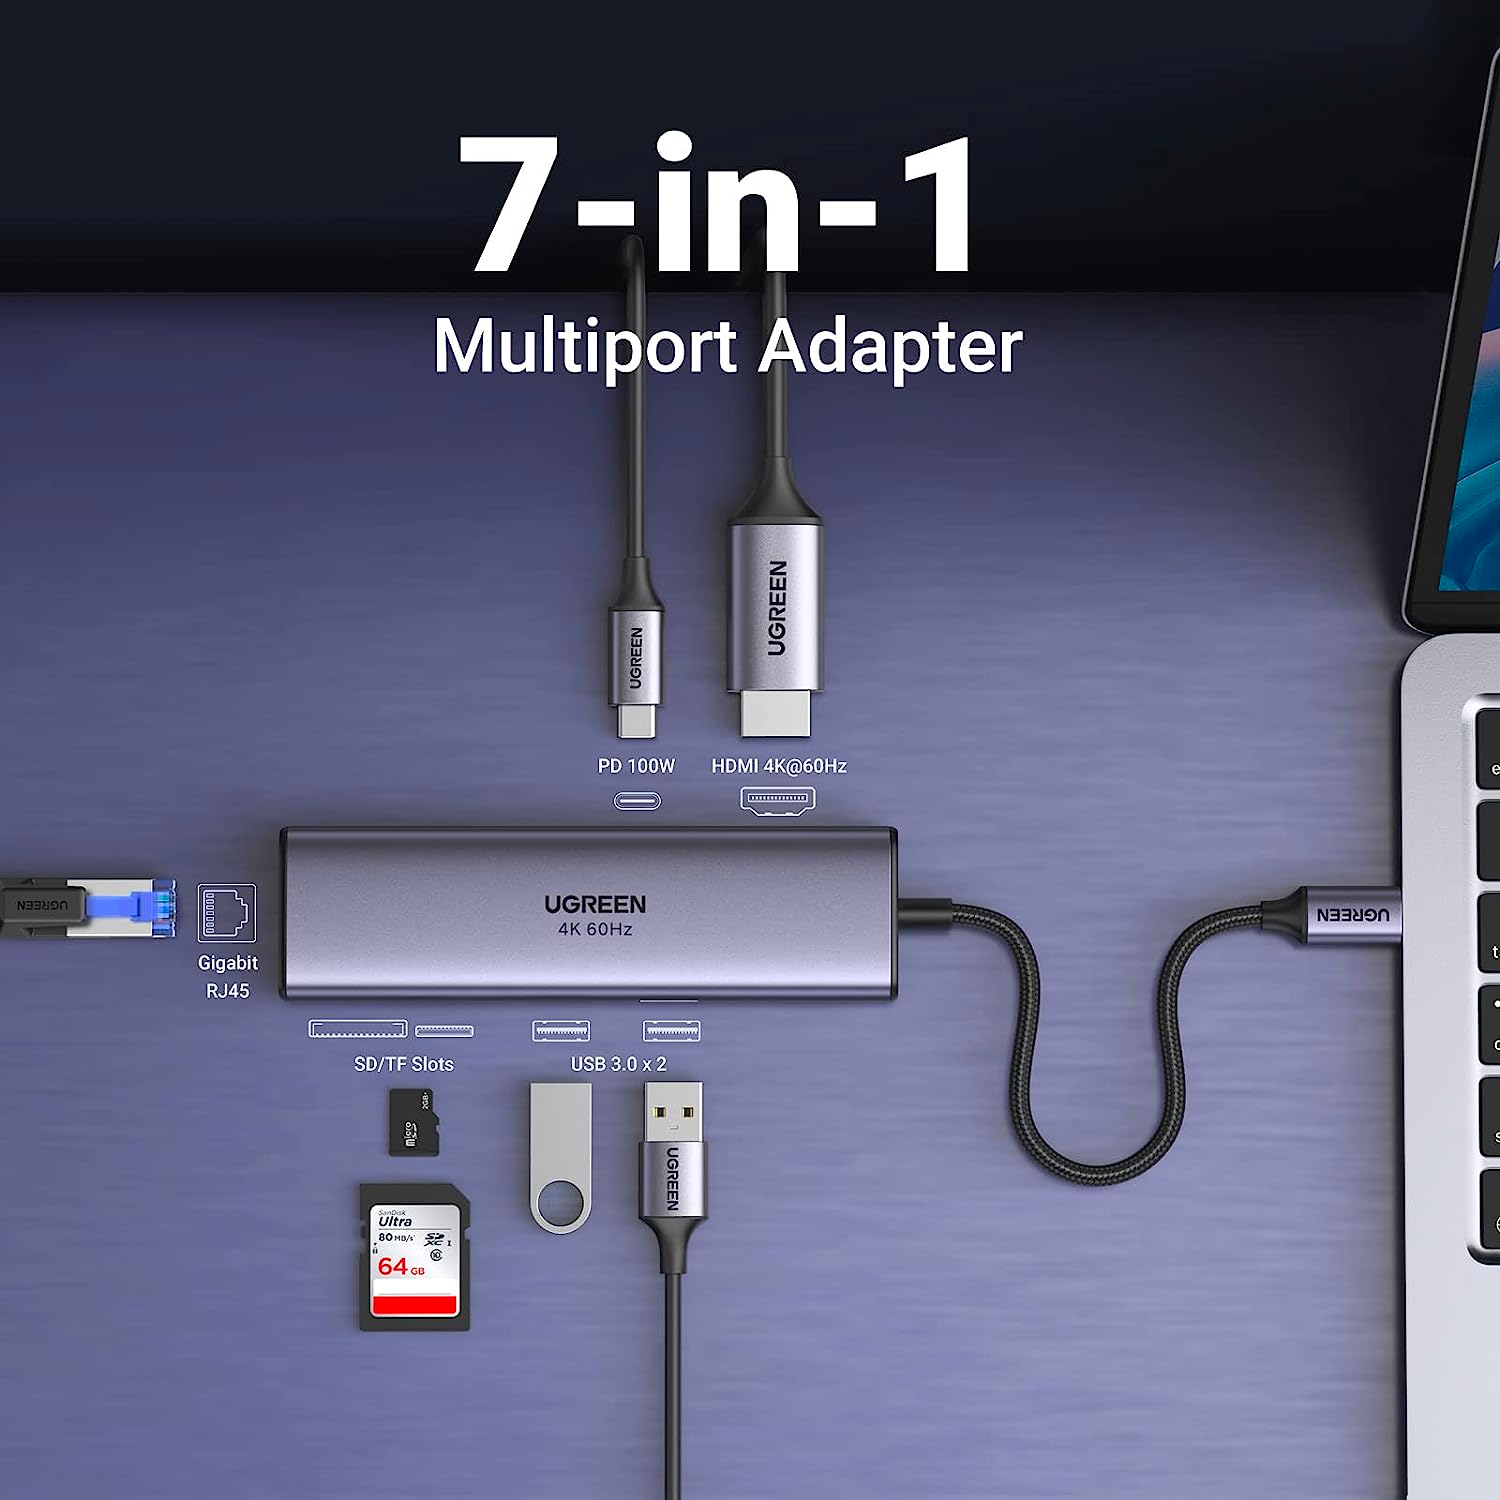 UGREEN Adaptador Multipuerto 7 en 1 HUB USB-C con puerto Ethernet, HDMI 4K a 60Hz, 100W PD, lector de tarjetas SD/TF, 2 puertos USB 3.0, compatible con Mac M1, M2, iPad, Steam Deck